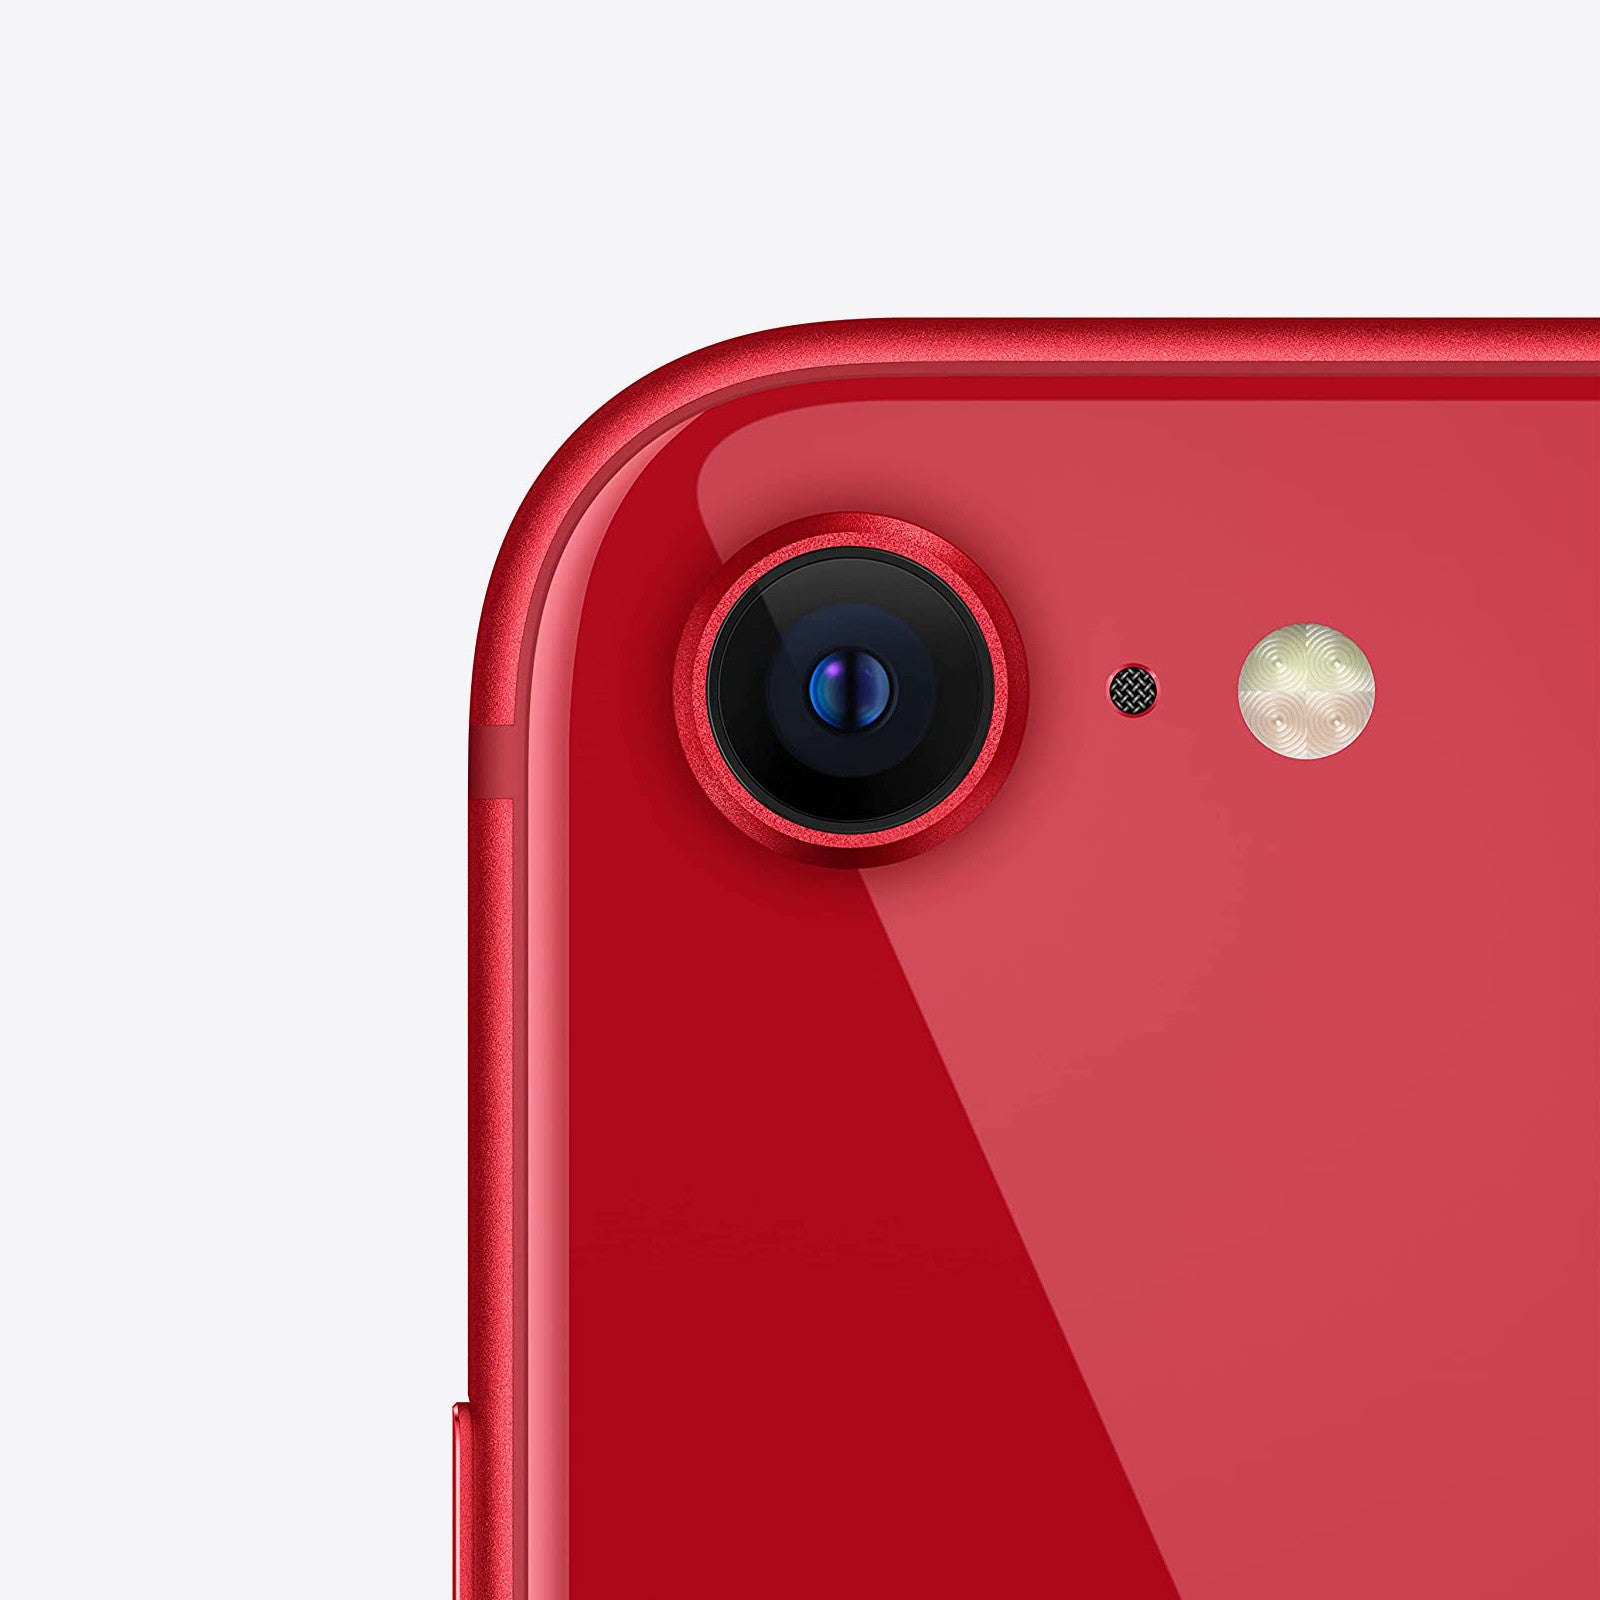 Apple iPhone SE 3rd Gen 64GB Product Red Unlocked Very Good – Loop